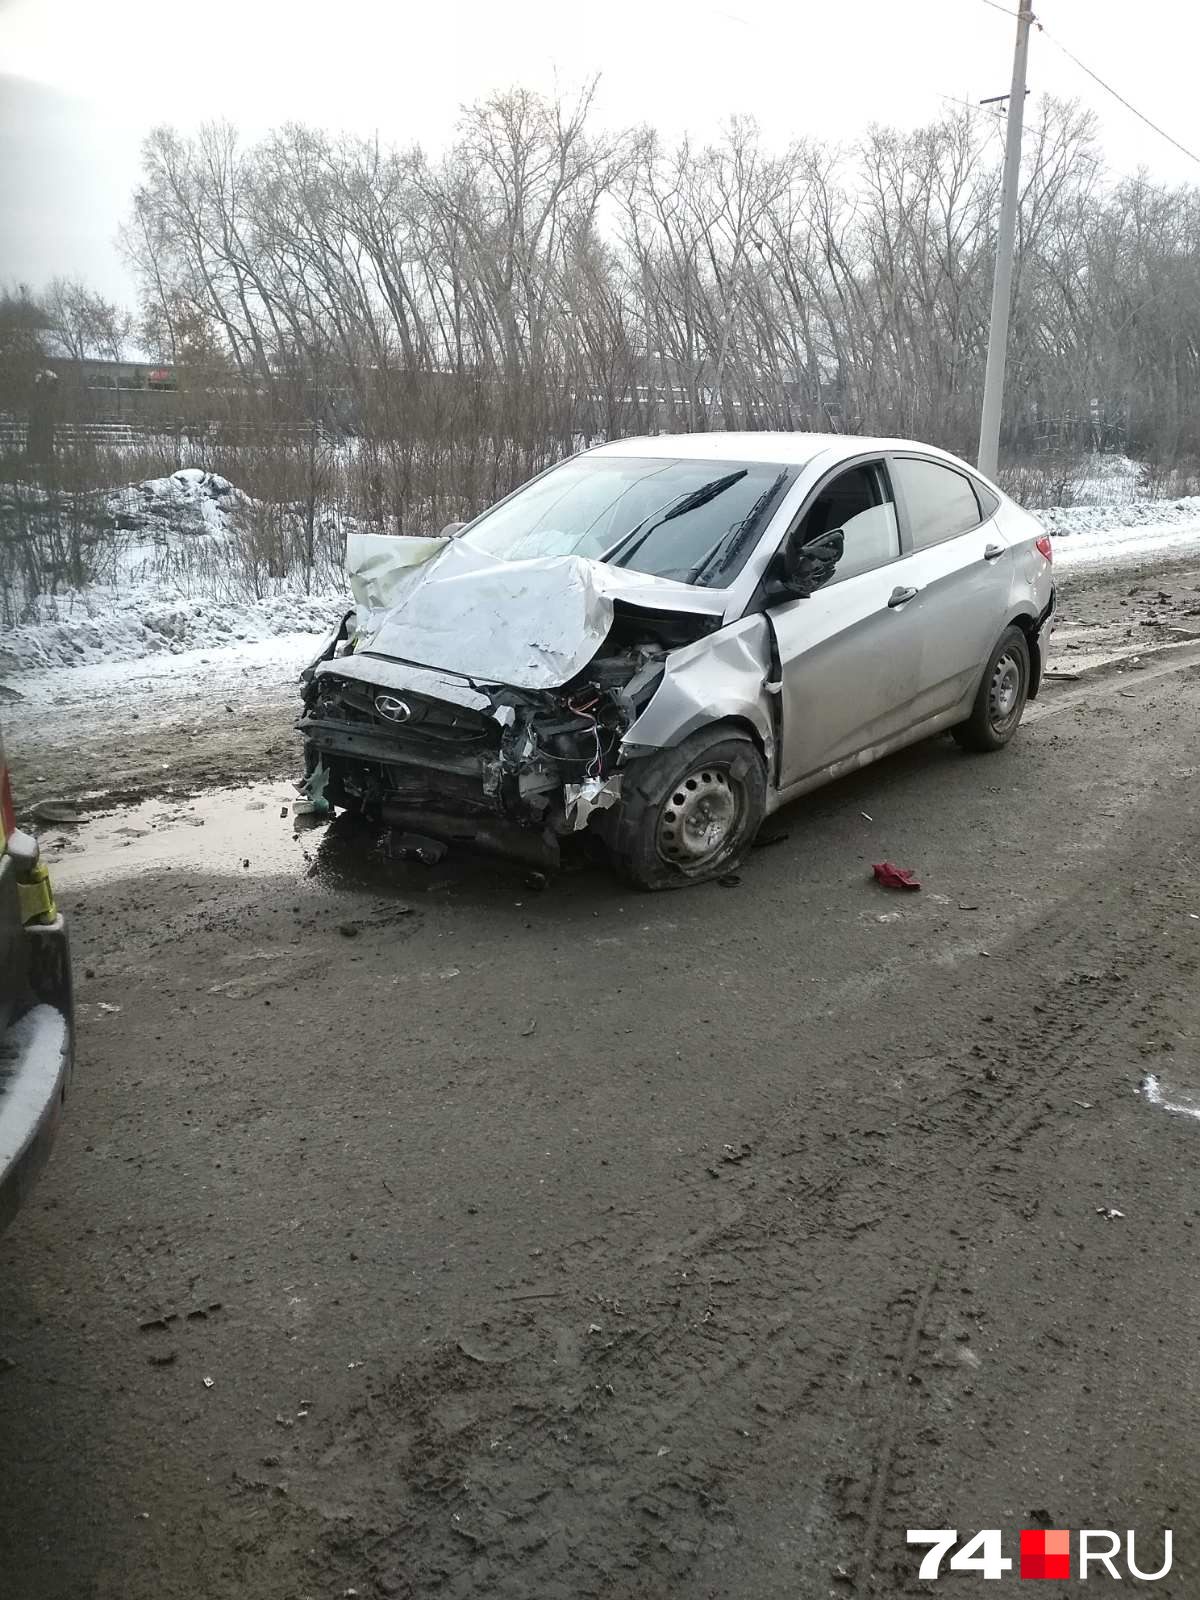 По словам очевидцев, Hyundai влетел в малолитражку, когда её водитель начала разворачиваться